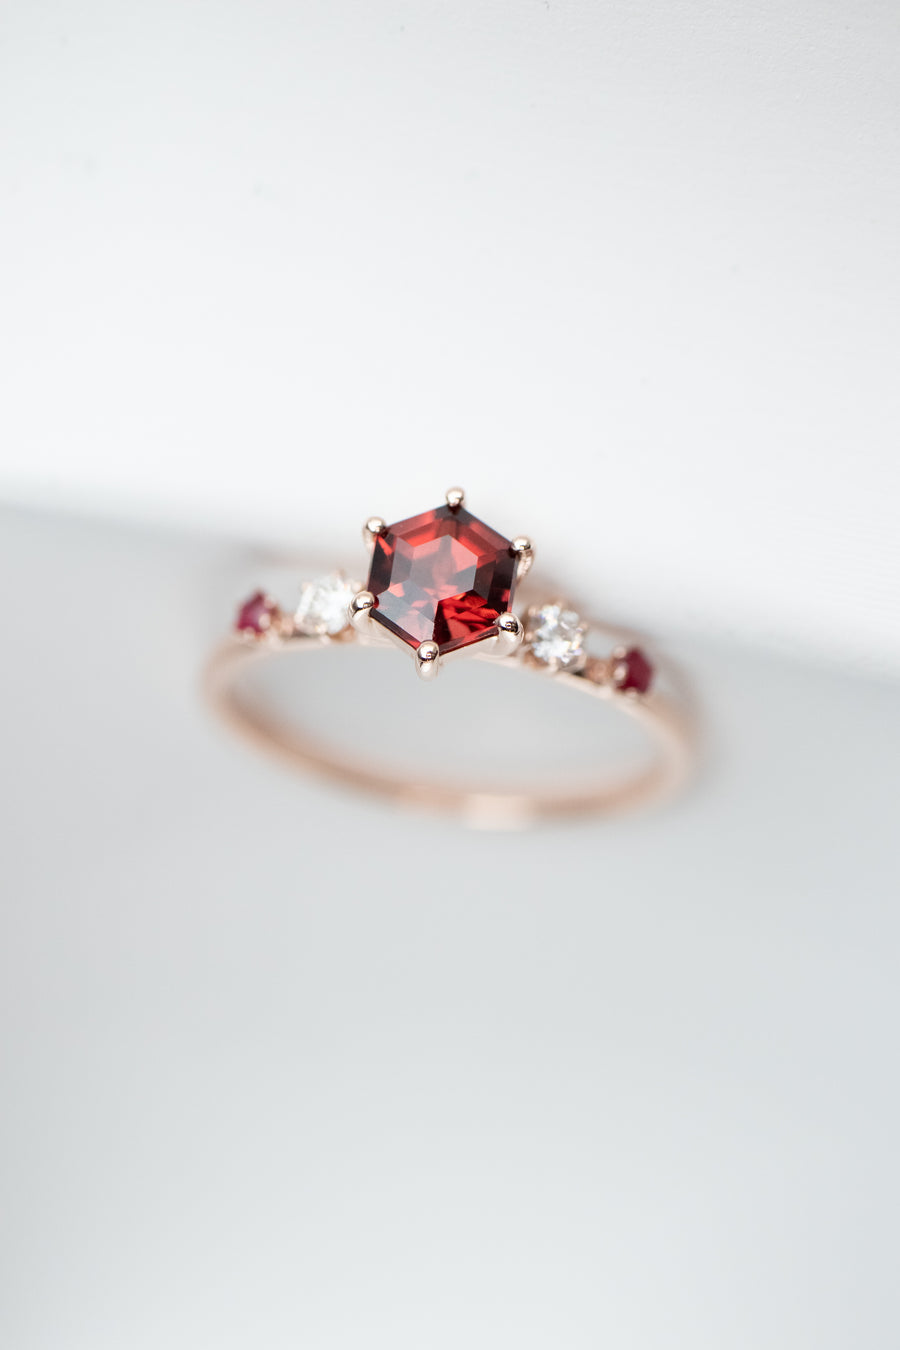 ~0.66carat Red Garnet & 0.08carat Natural Diamonds 14K Rose Gold Ring